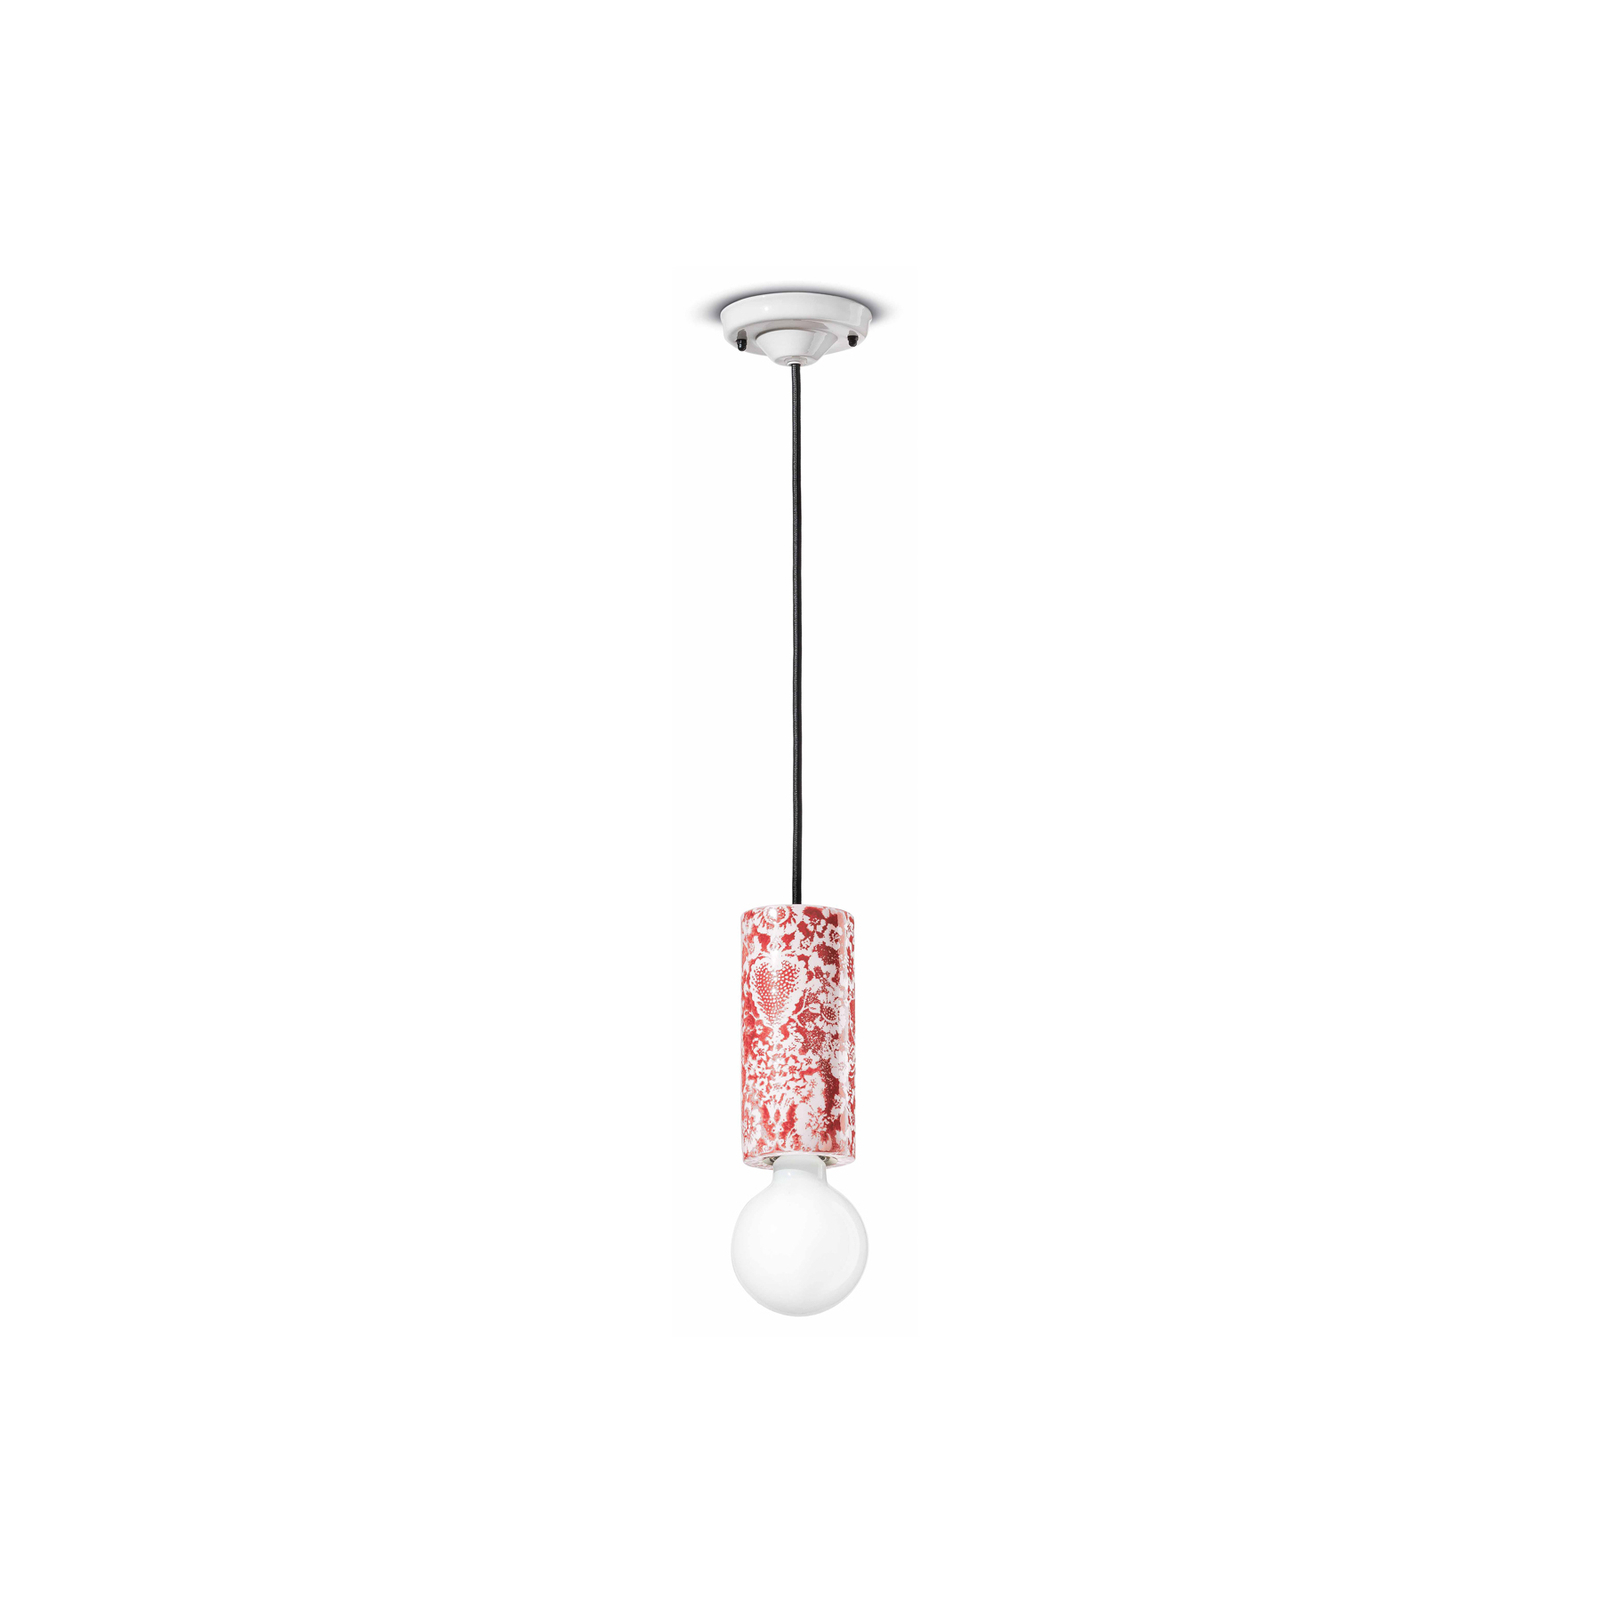 PI viseča svetilka, cvetlični vzorec Ø 8 cm rdeča/bela